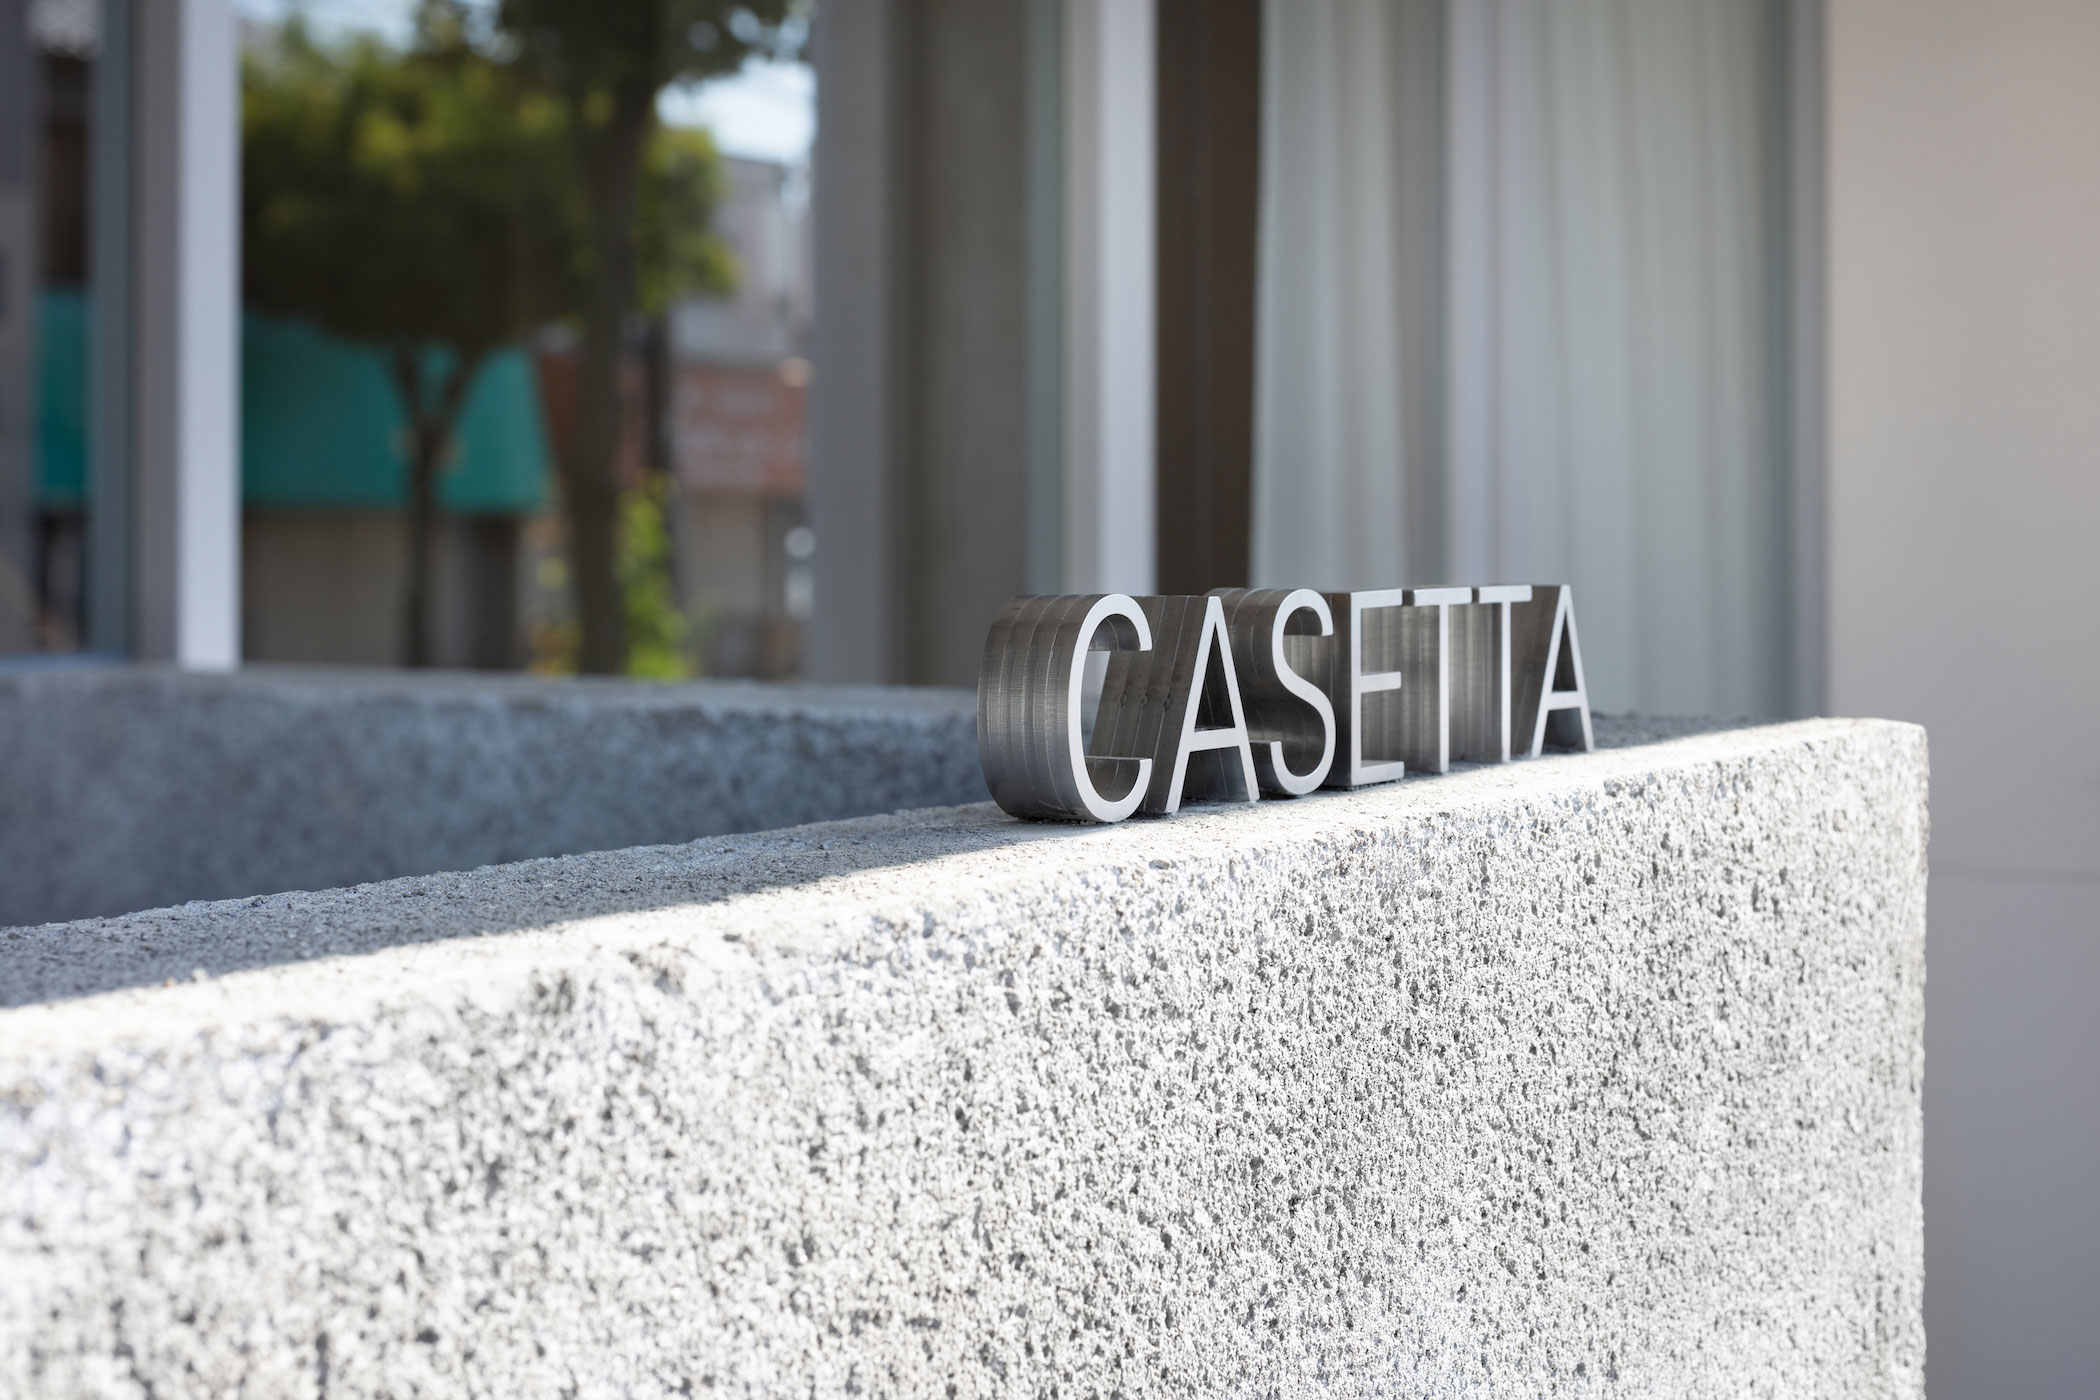 Casetta